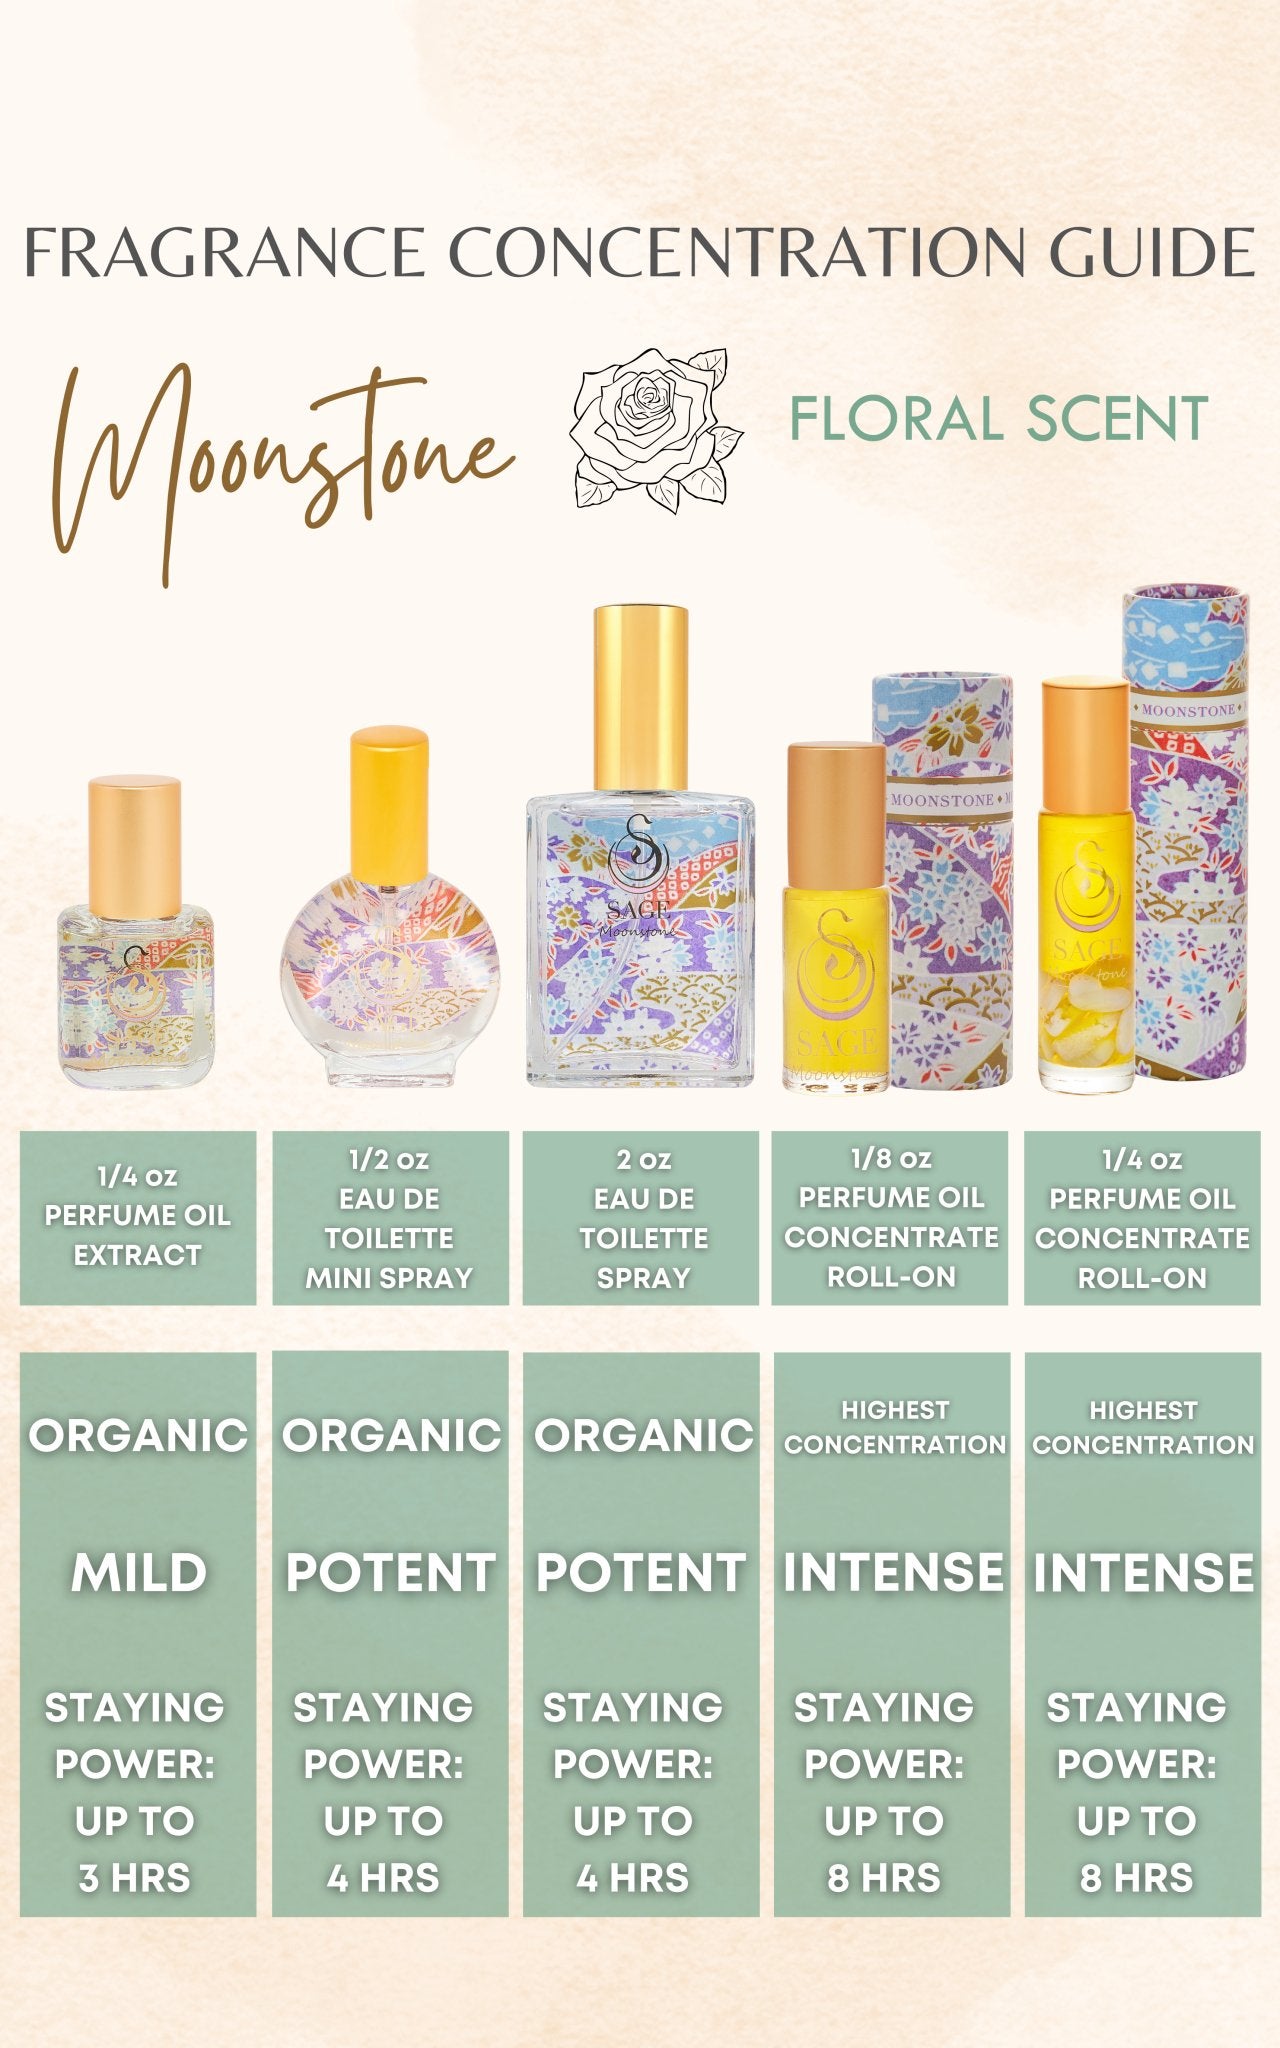 Moonstone Organic 2oz Perfume Eau de Toilette by Sage - The Sage Lifestyle